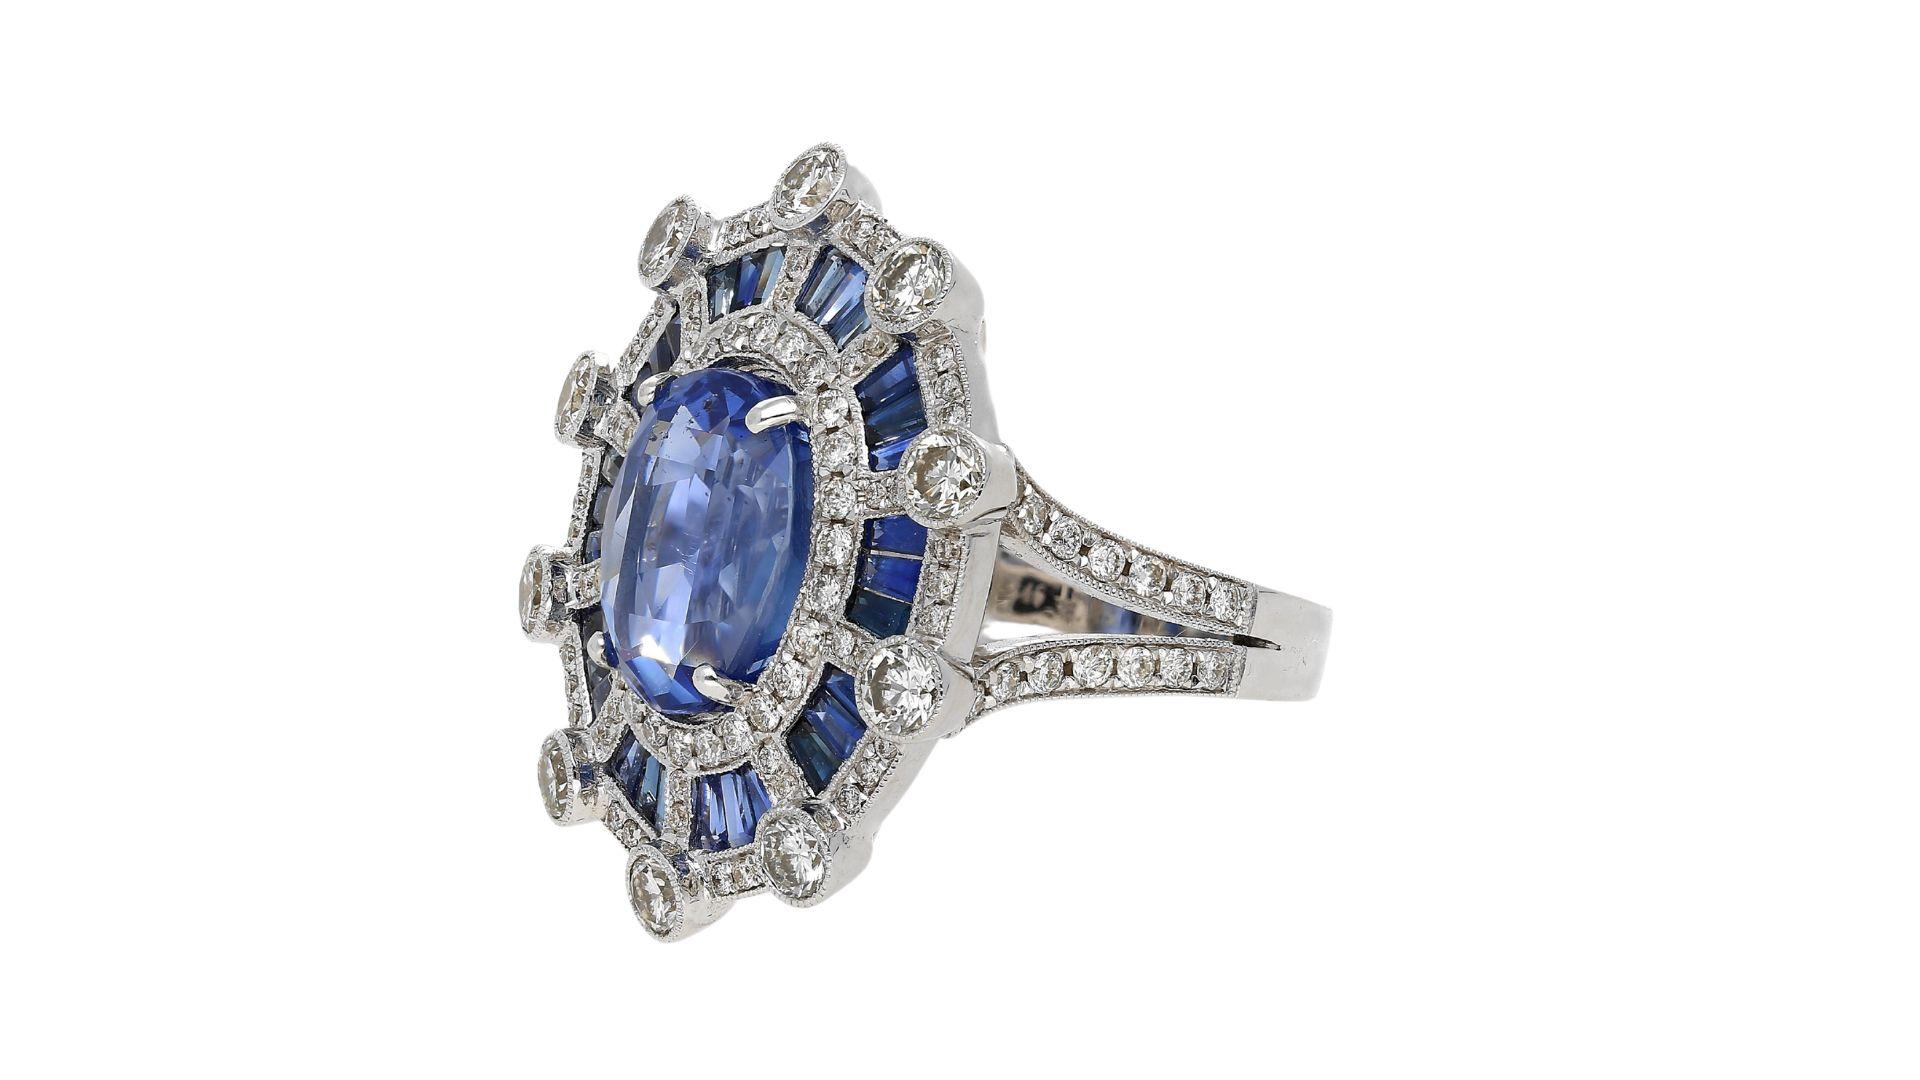 Bague de 8,46 carats certifiée GIA, saphir bleu du Sri Lanka, taille ovale, sans échauffement, et halo de diamants dans une monture géométrique de style art déco. Le saphir principal est entouré de saphirs baguettes sertis en tension (3,35 cttw), de